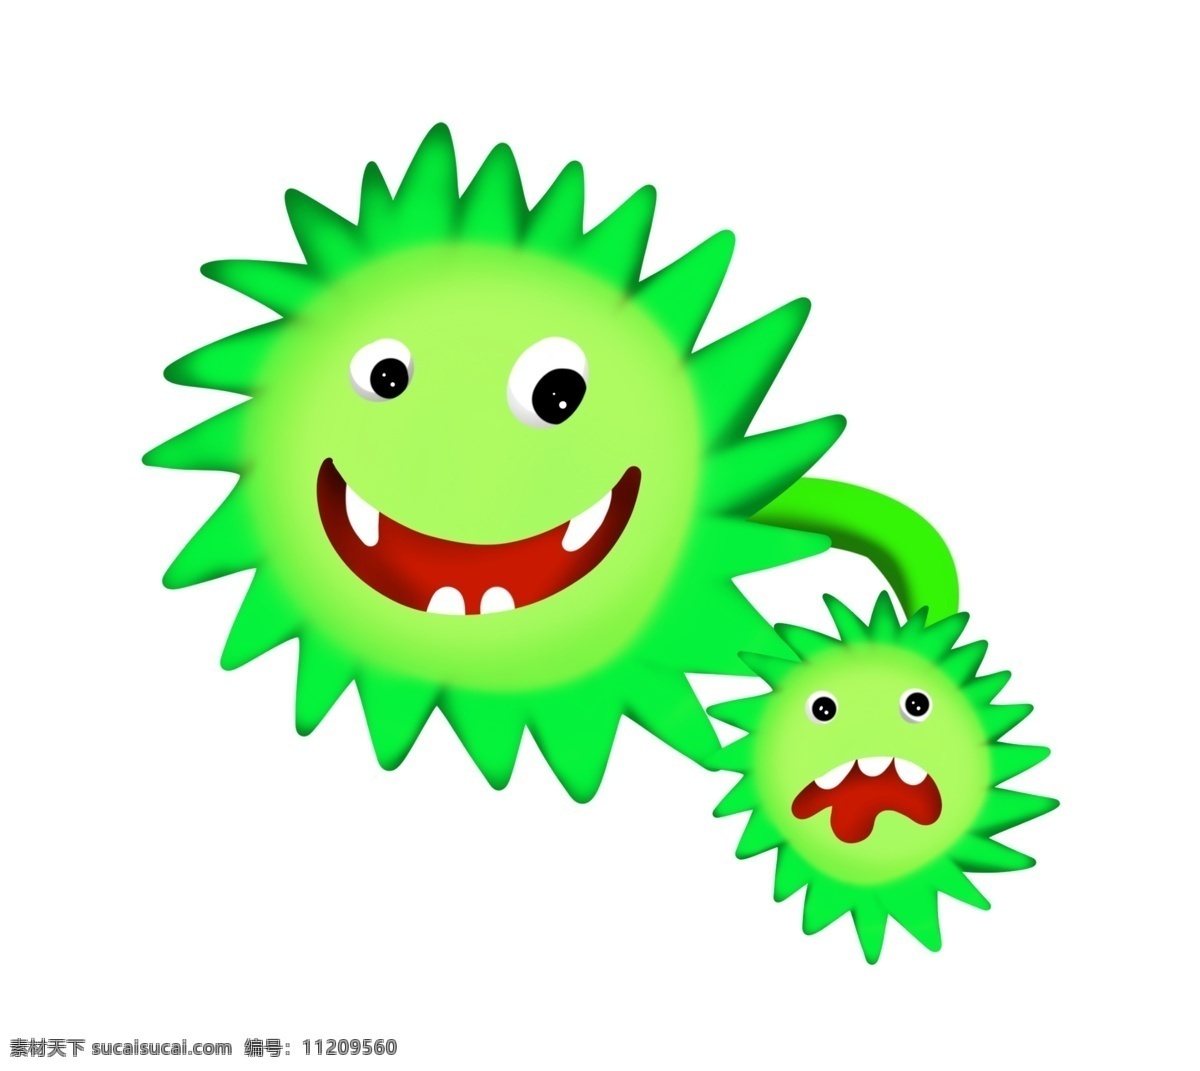 绿色 有害 细菌 插画 绿色的细菌 卡通插画 有害细菌 细菌插画 病菌插画 病菌细菌 长长的牙齿